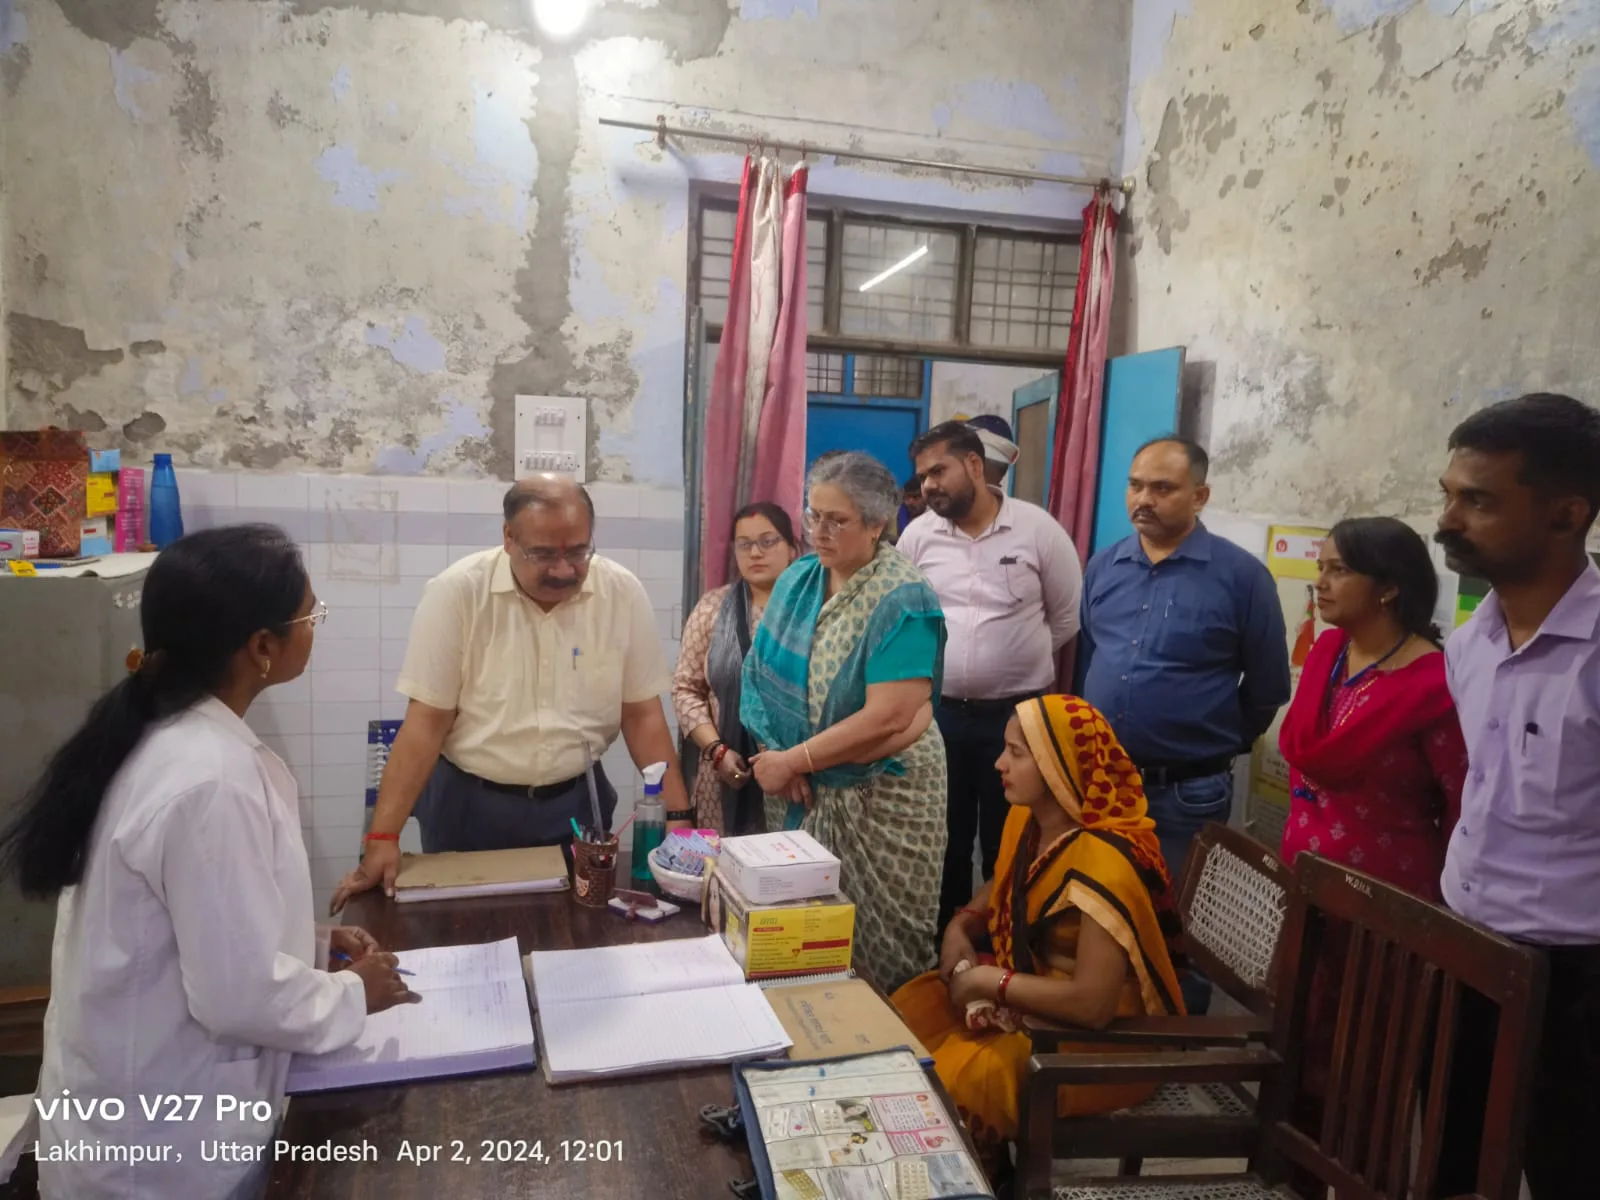 सीएमओ और सीएमएस द्वारा महिला चिकित्सालय का संयुक्त रूप से किया गया निरीक्षण | New India Times